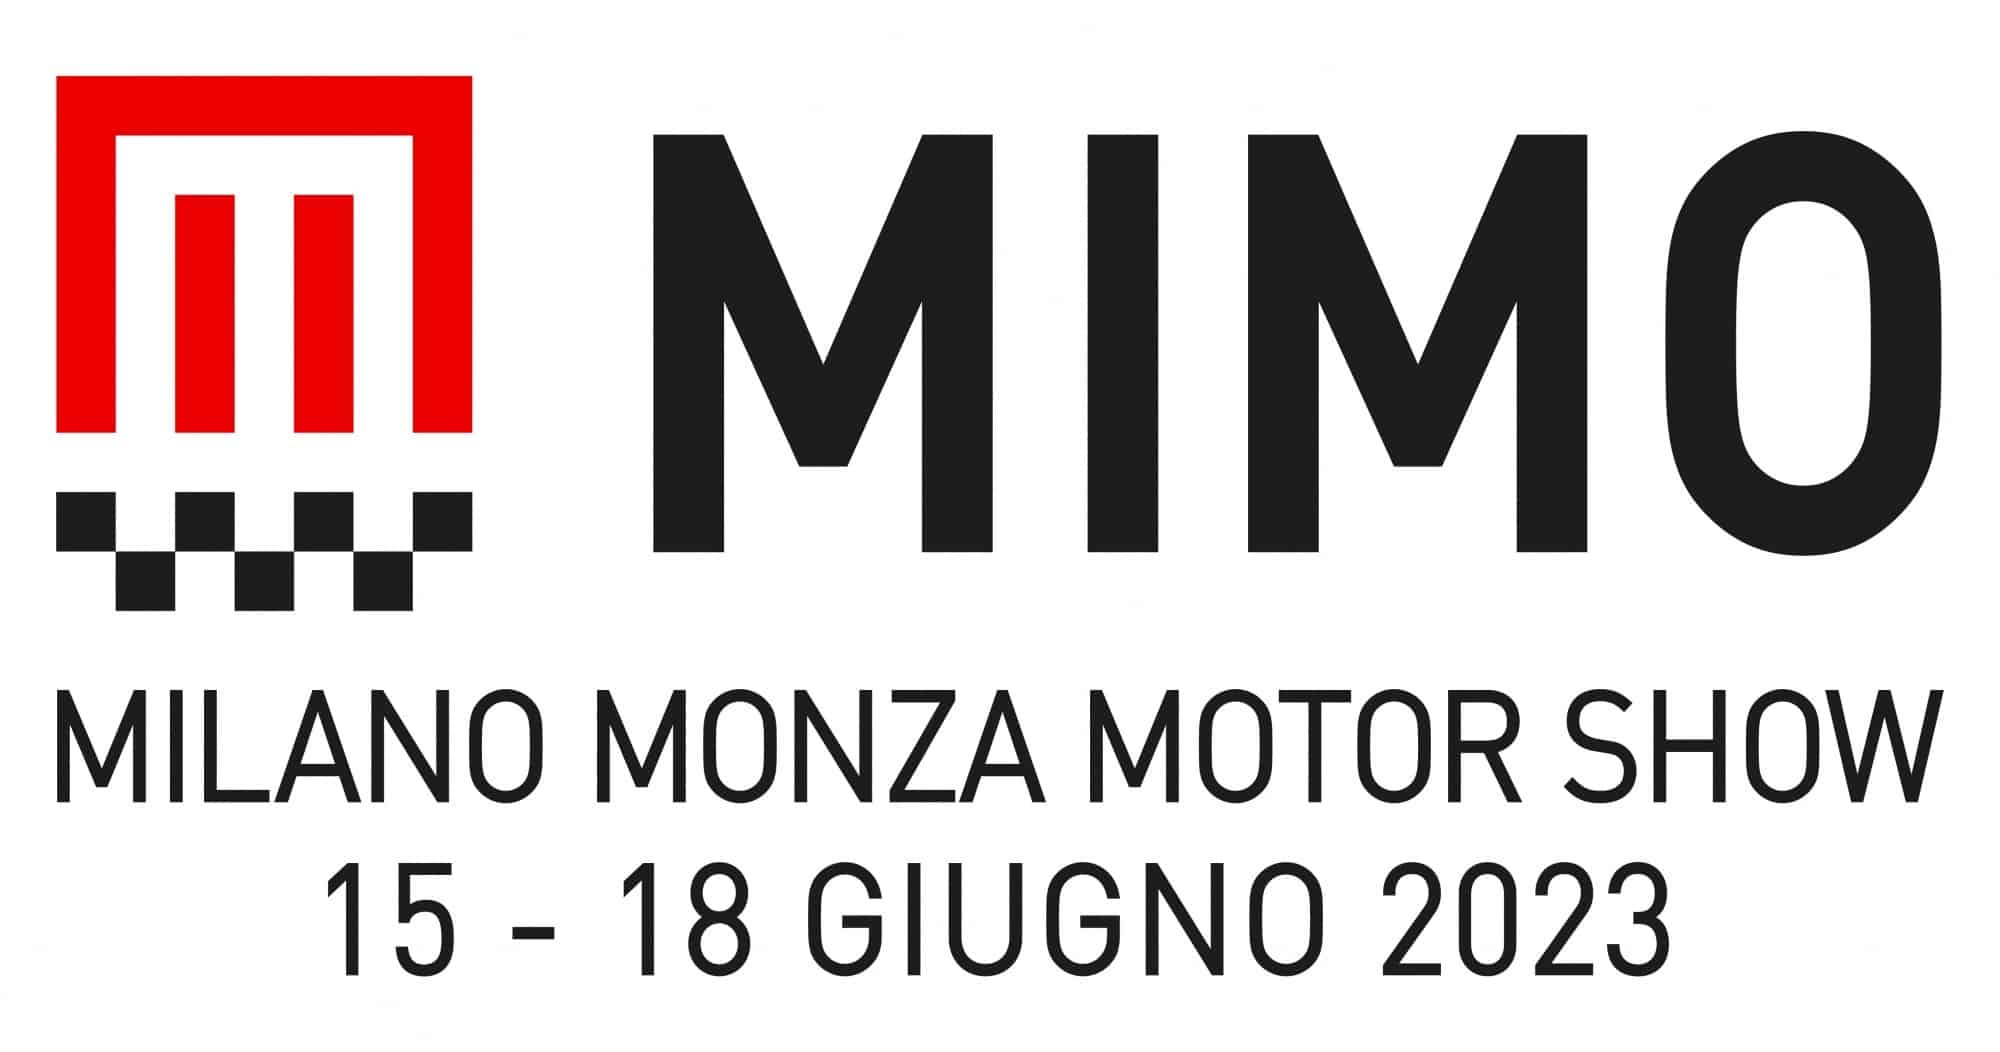 MIMO 2023: ufficializzate le date dell'evento thumbnail